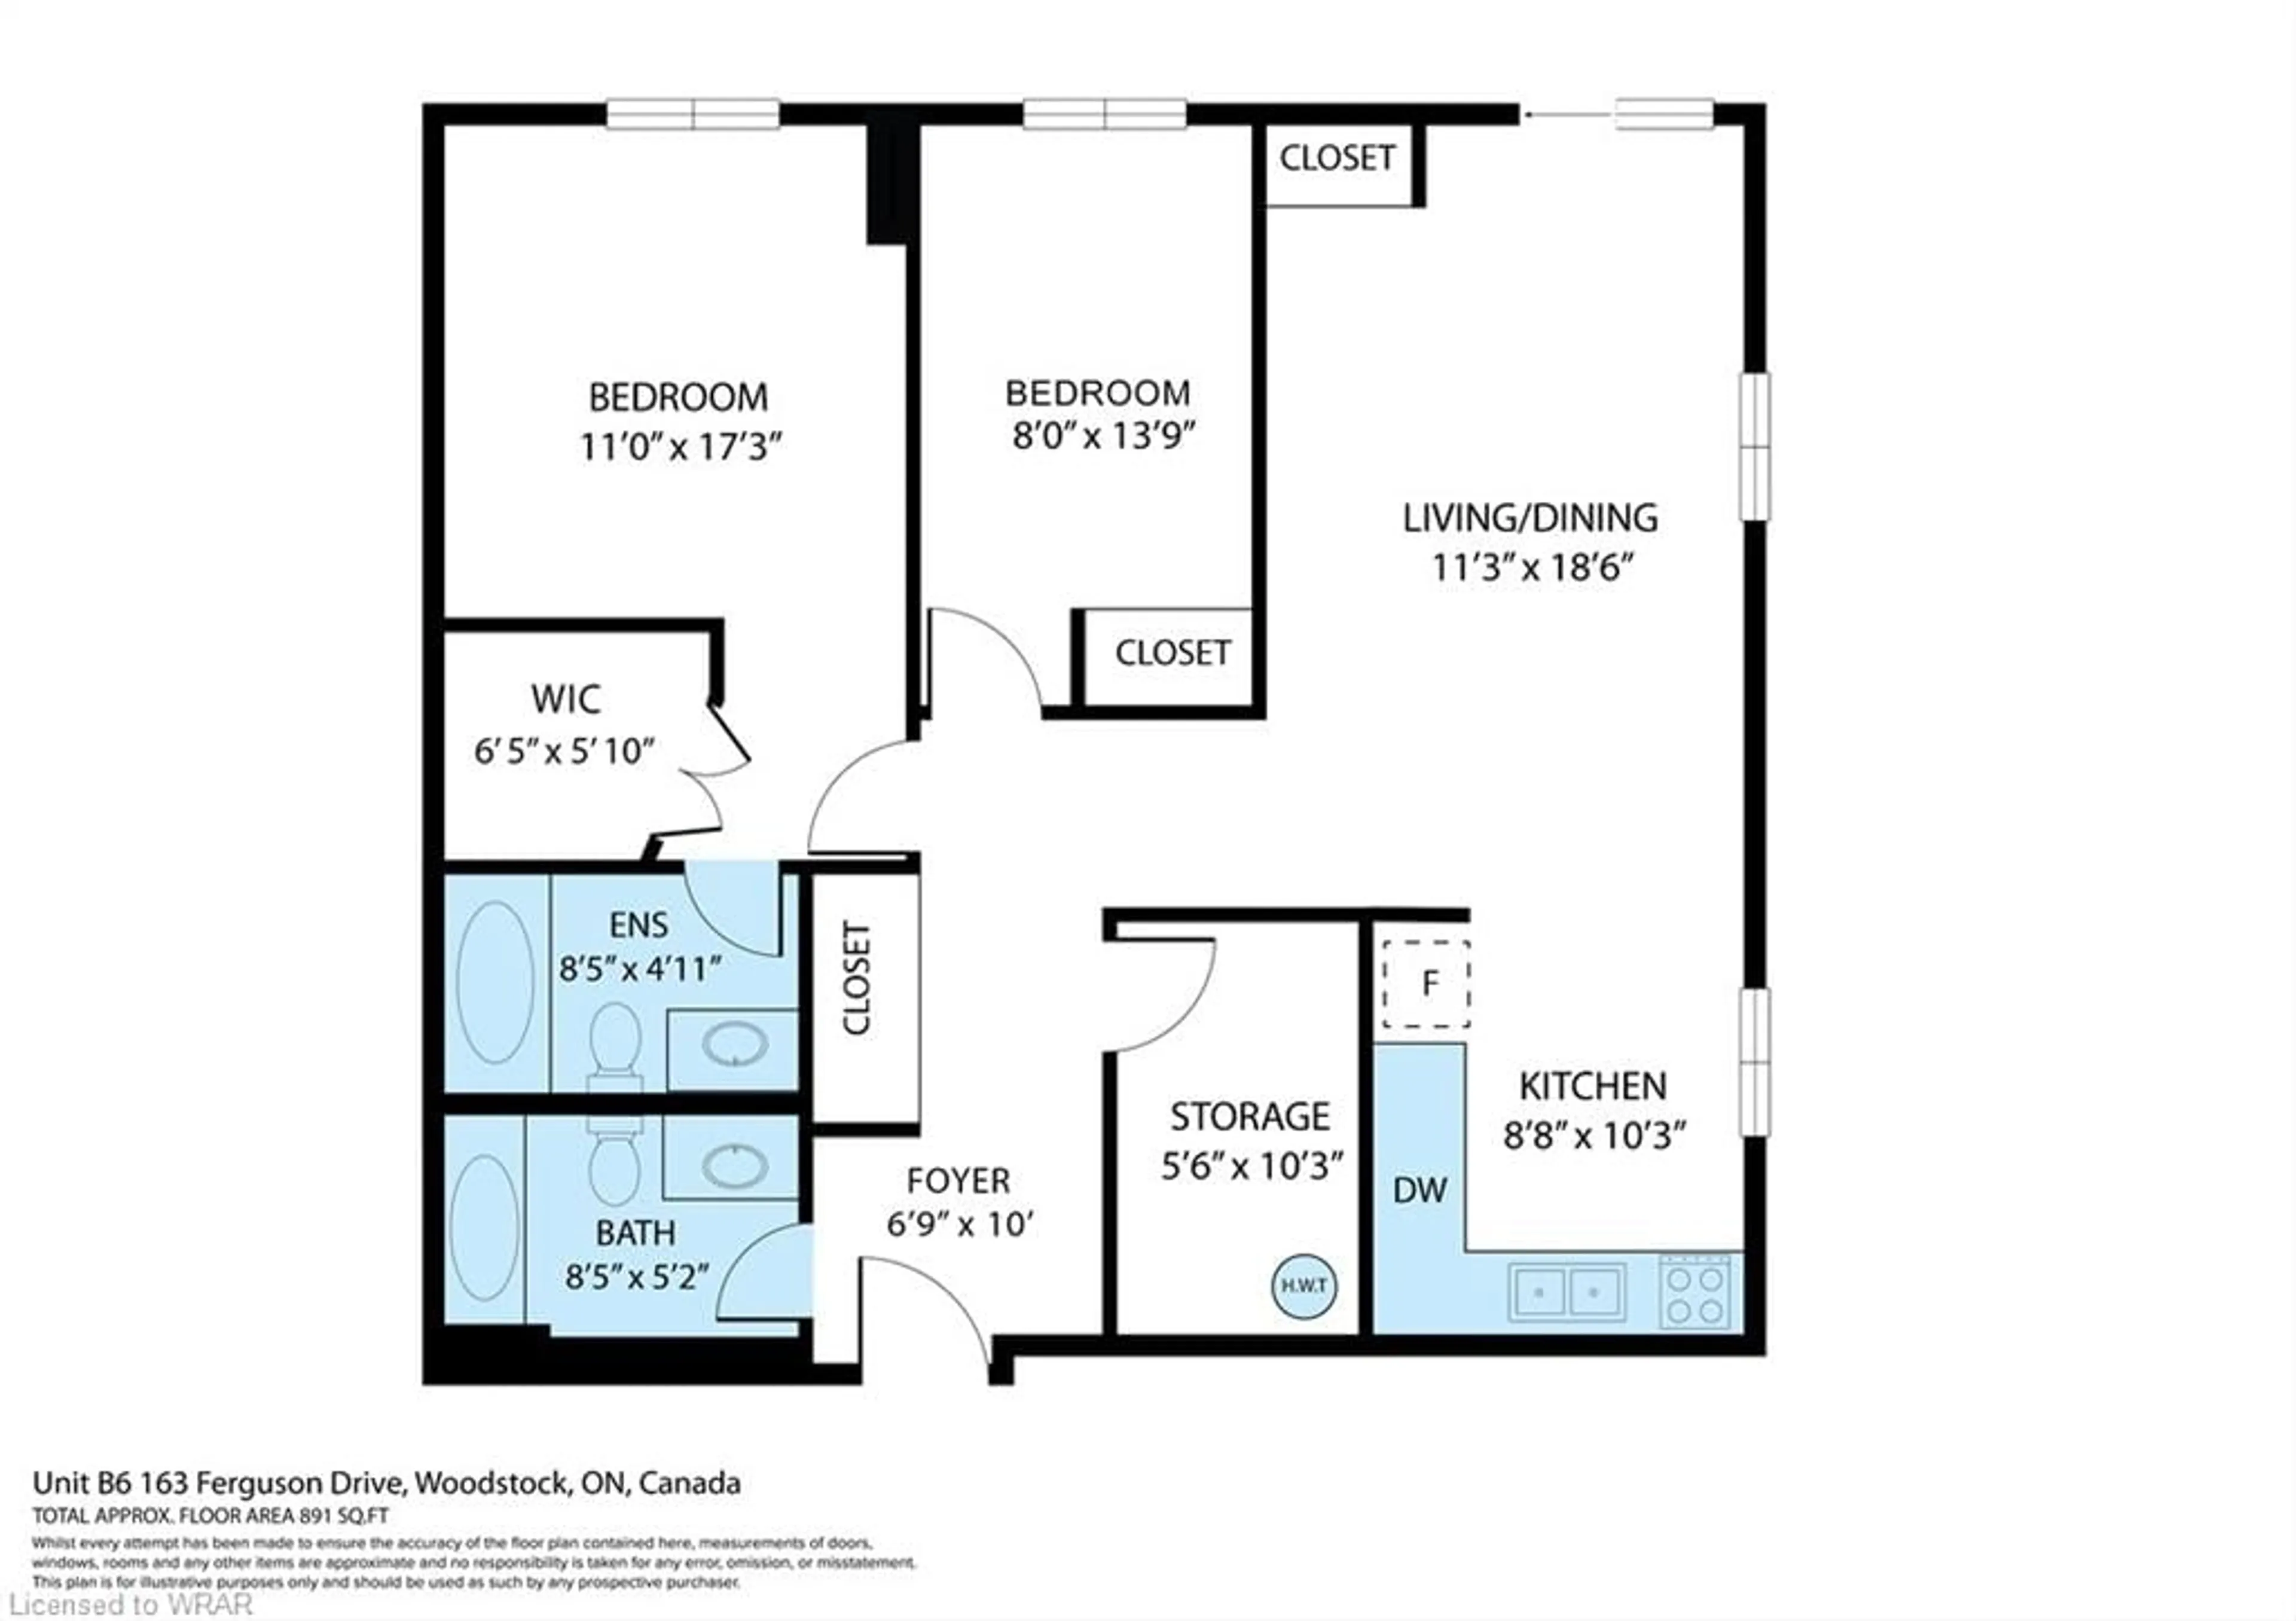 Floor plan for 163 Ferguson Dr #B6, Woodstock Ontario N4V 1B1